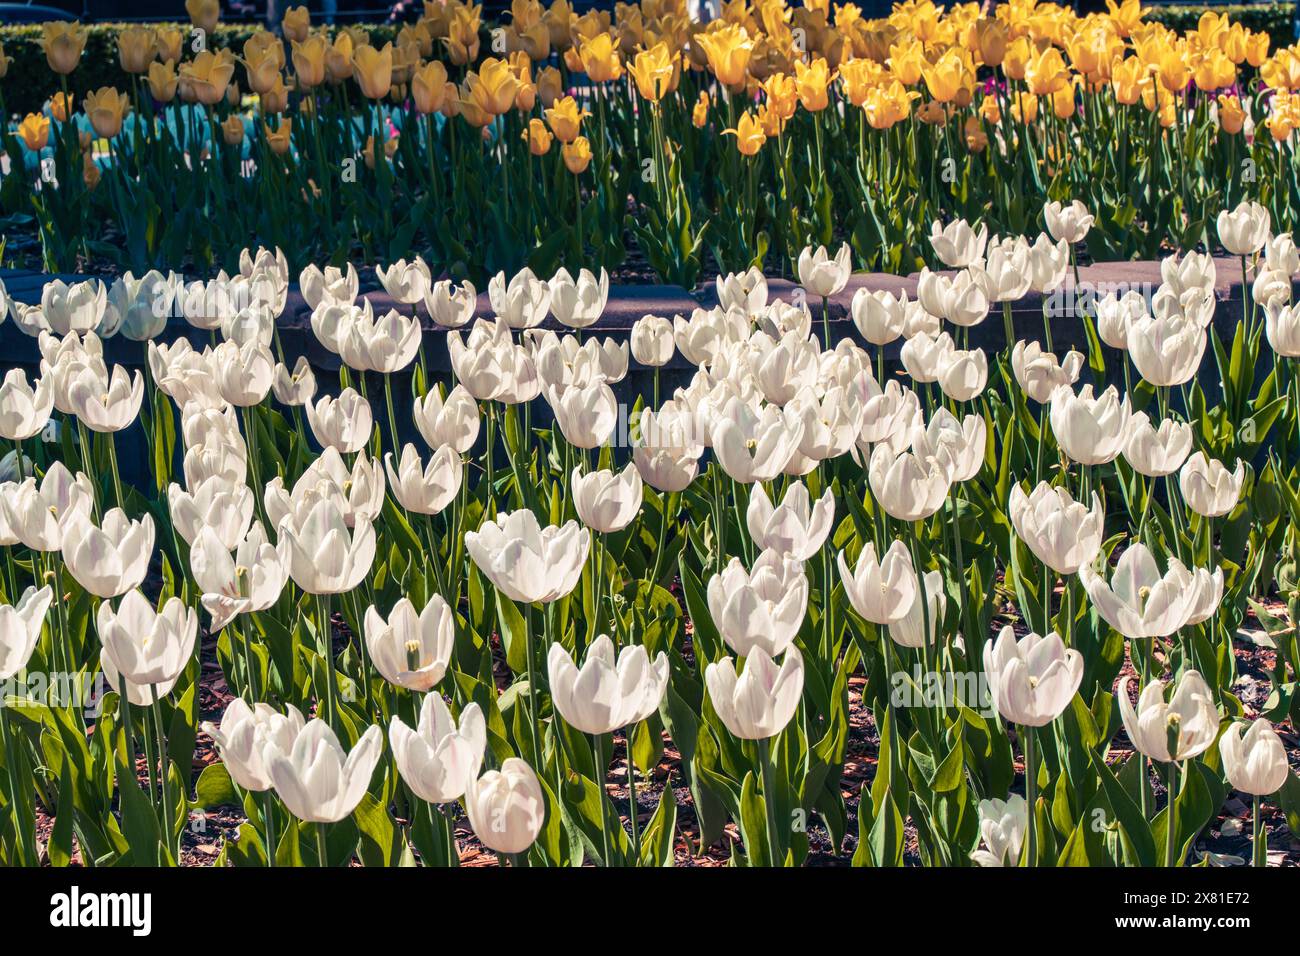 Tulipani bianchi e gialli per le strade della città. Decorazione floreale primaverile. Tulipani nel design paesaggistico. Messa a fuoco selezionata. Foto di alta qualità Foto Stock